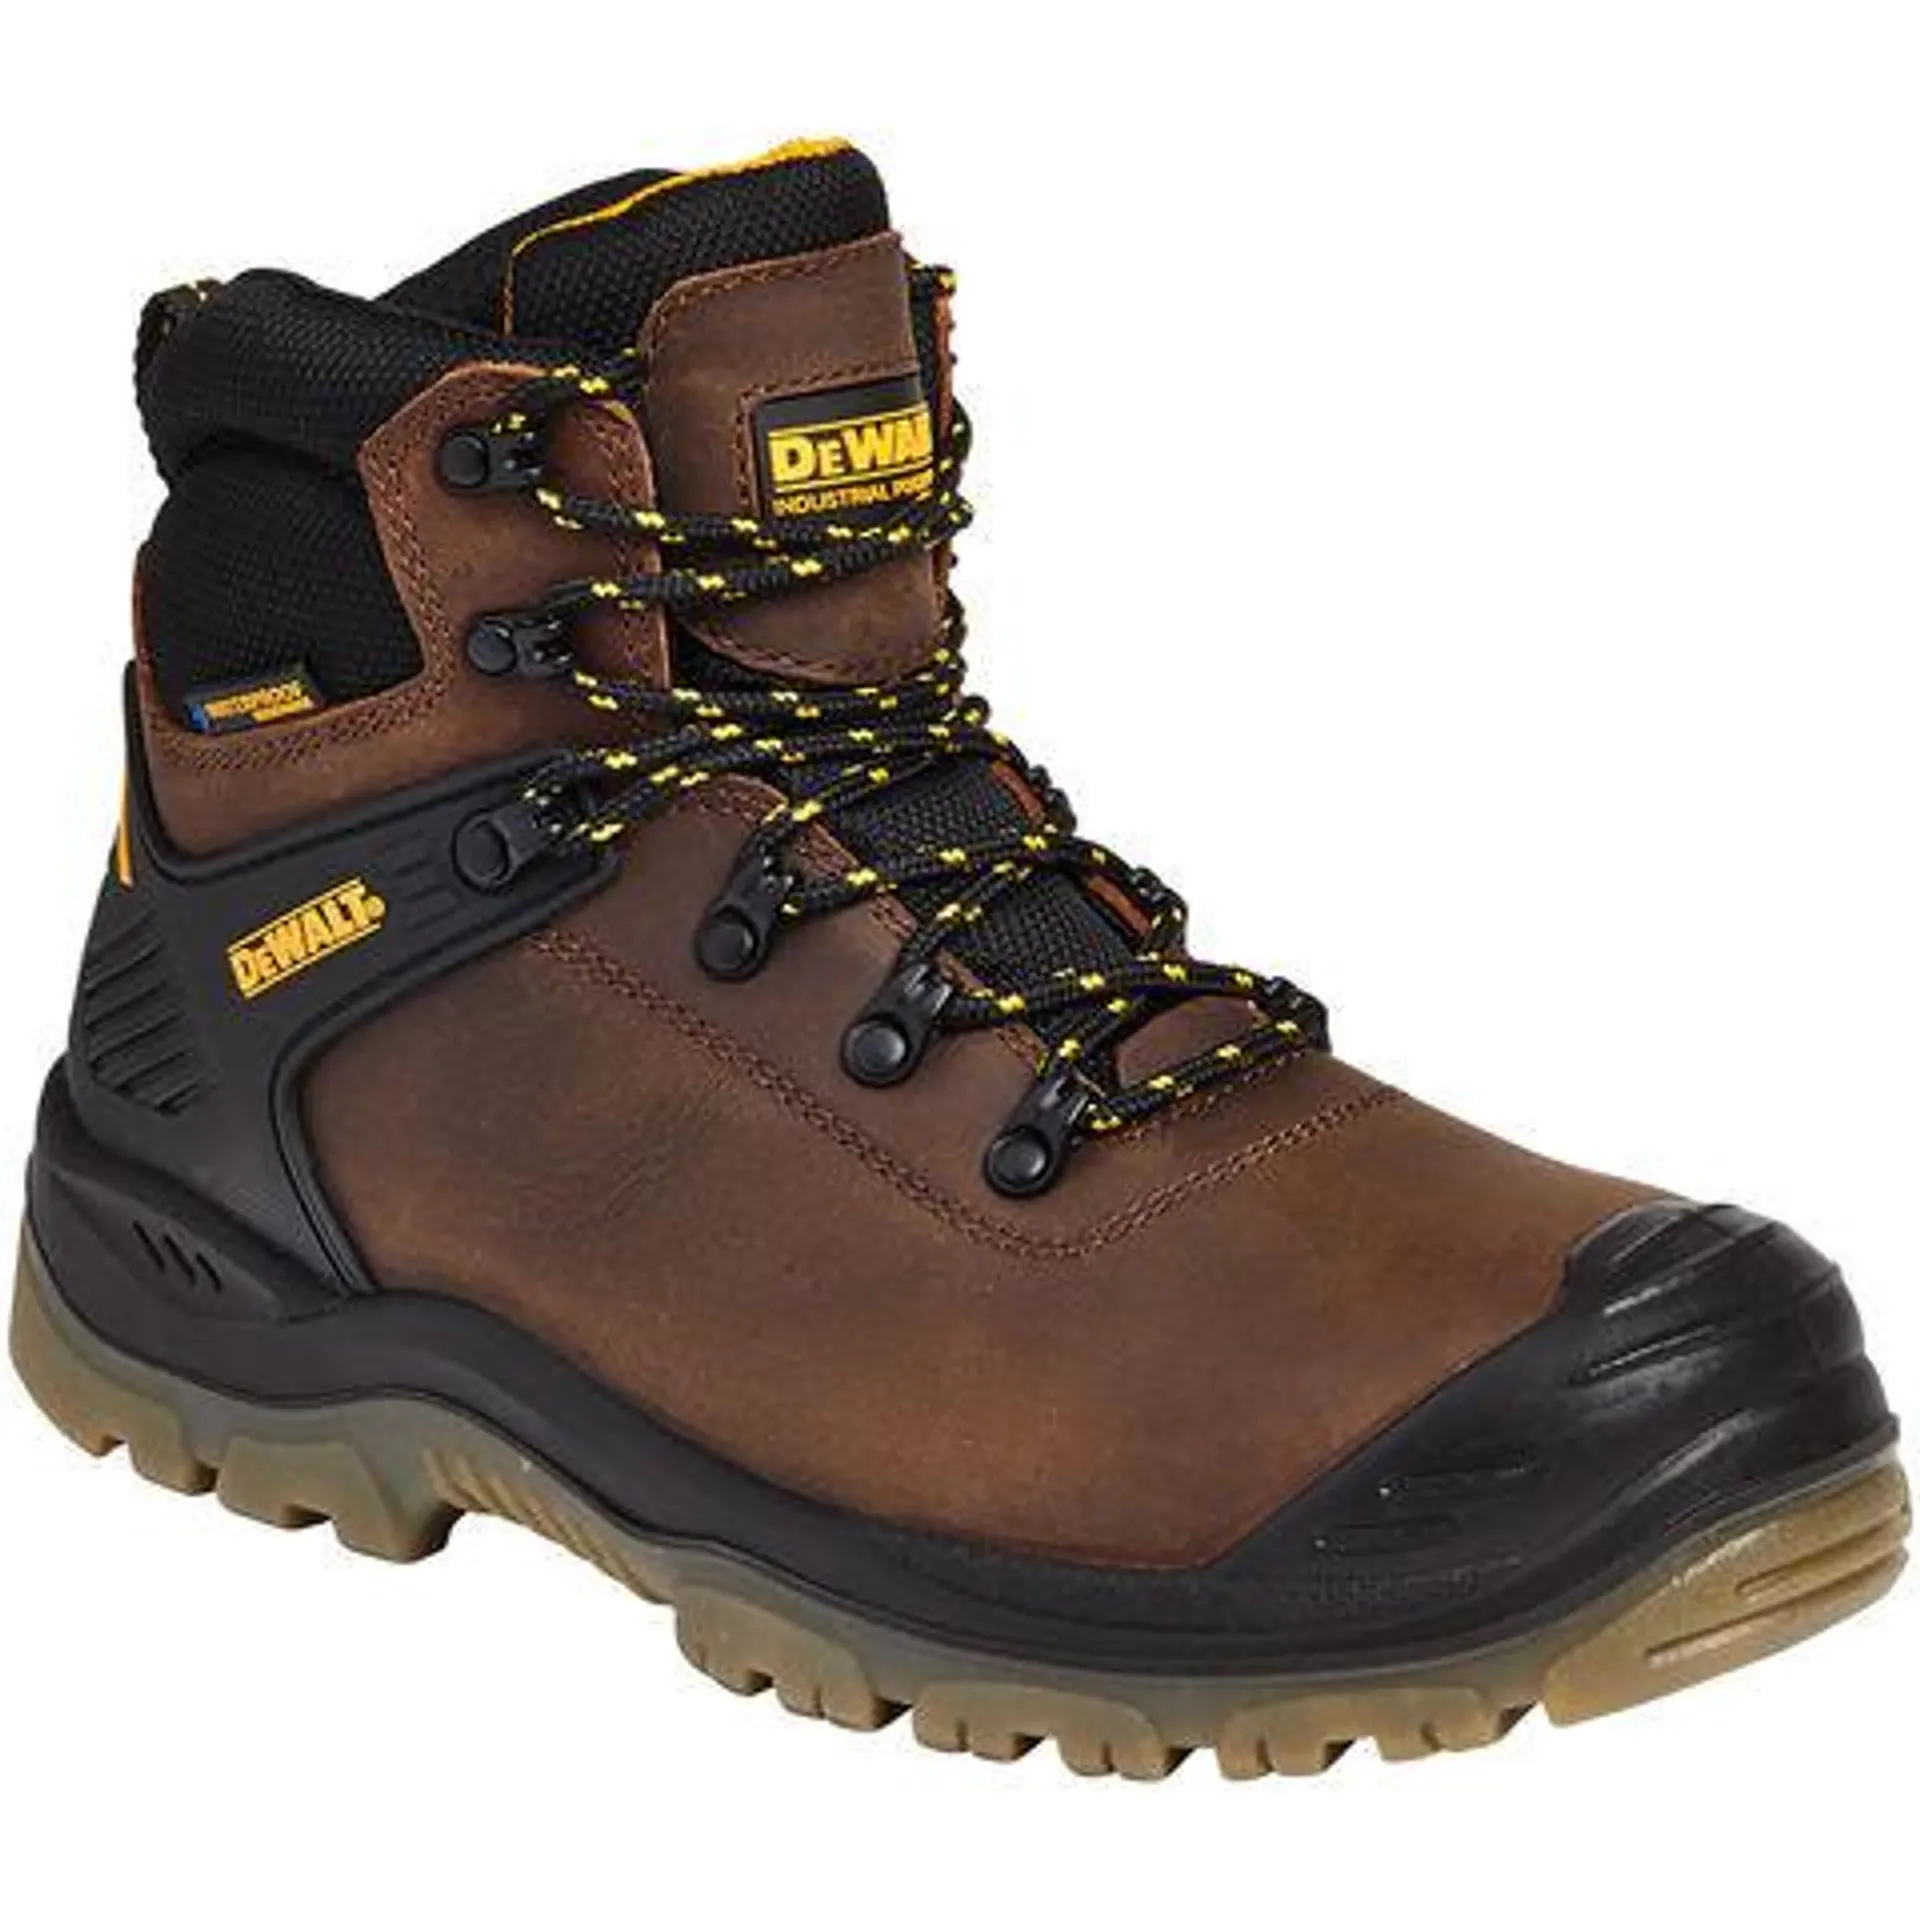 DeWalt Newark Brown Waterproof Safety Hiker Boots - Sizes 7 to 11